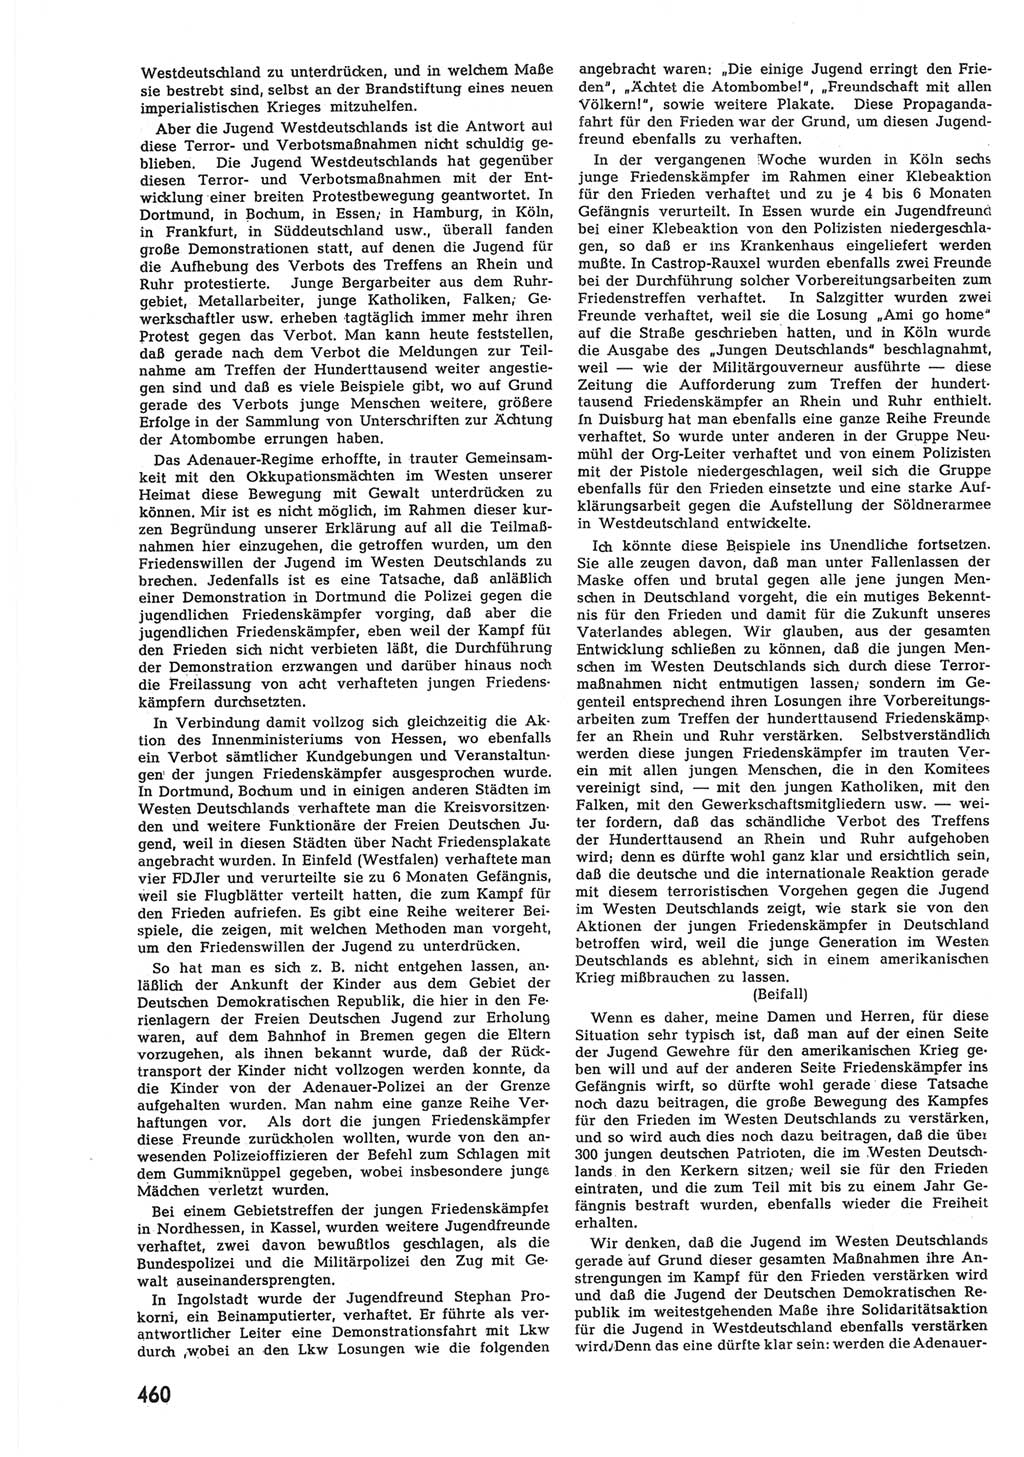 Provisorische Volkskammer (VK) der Deutschen Demokratischen Republik (DDR) 1949-1950, Dokument 478 (Prov. VK DDR 1949-1950, Dok. 478)